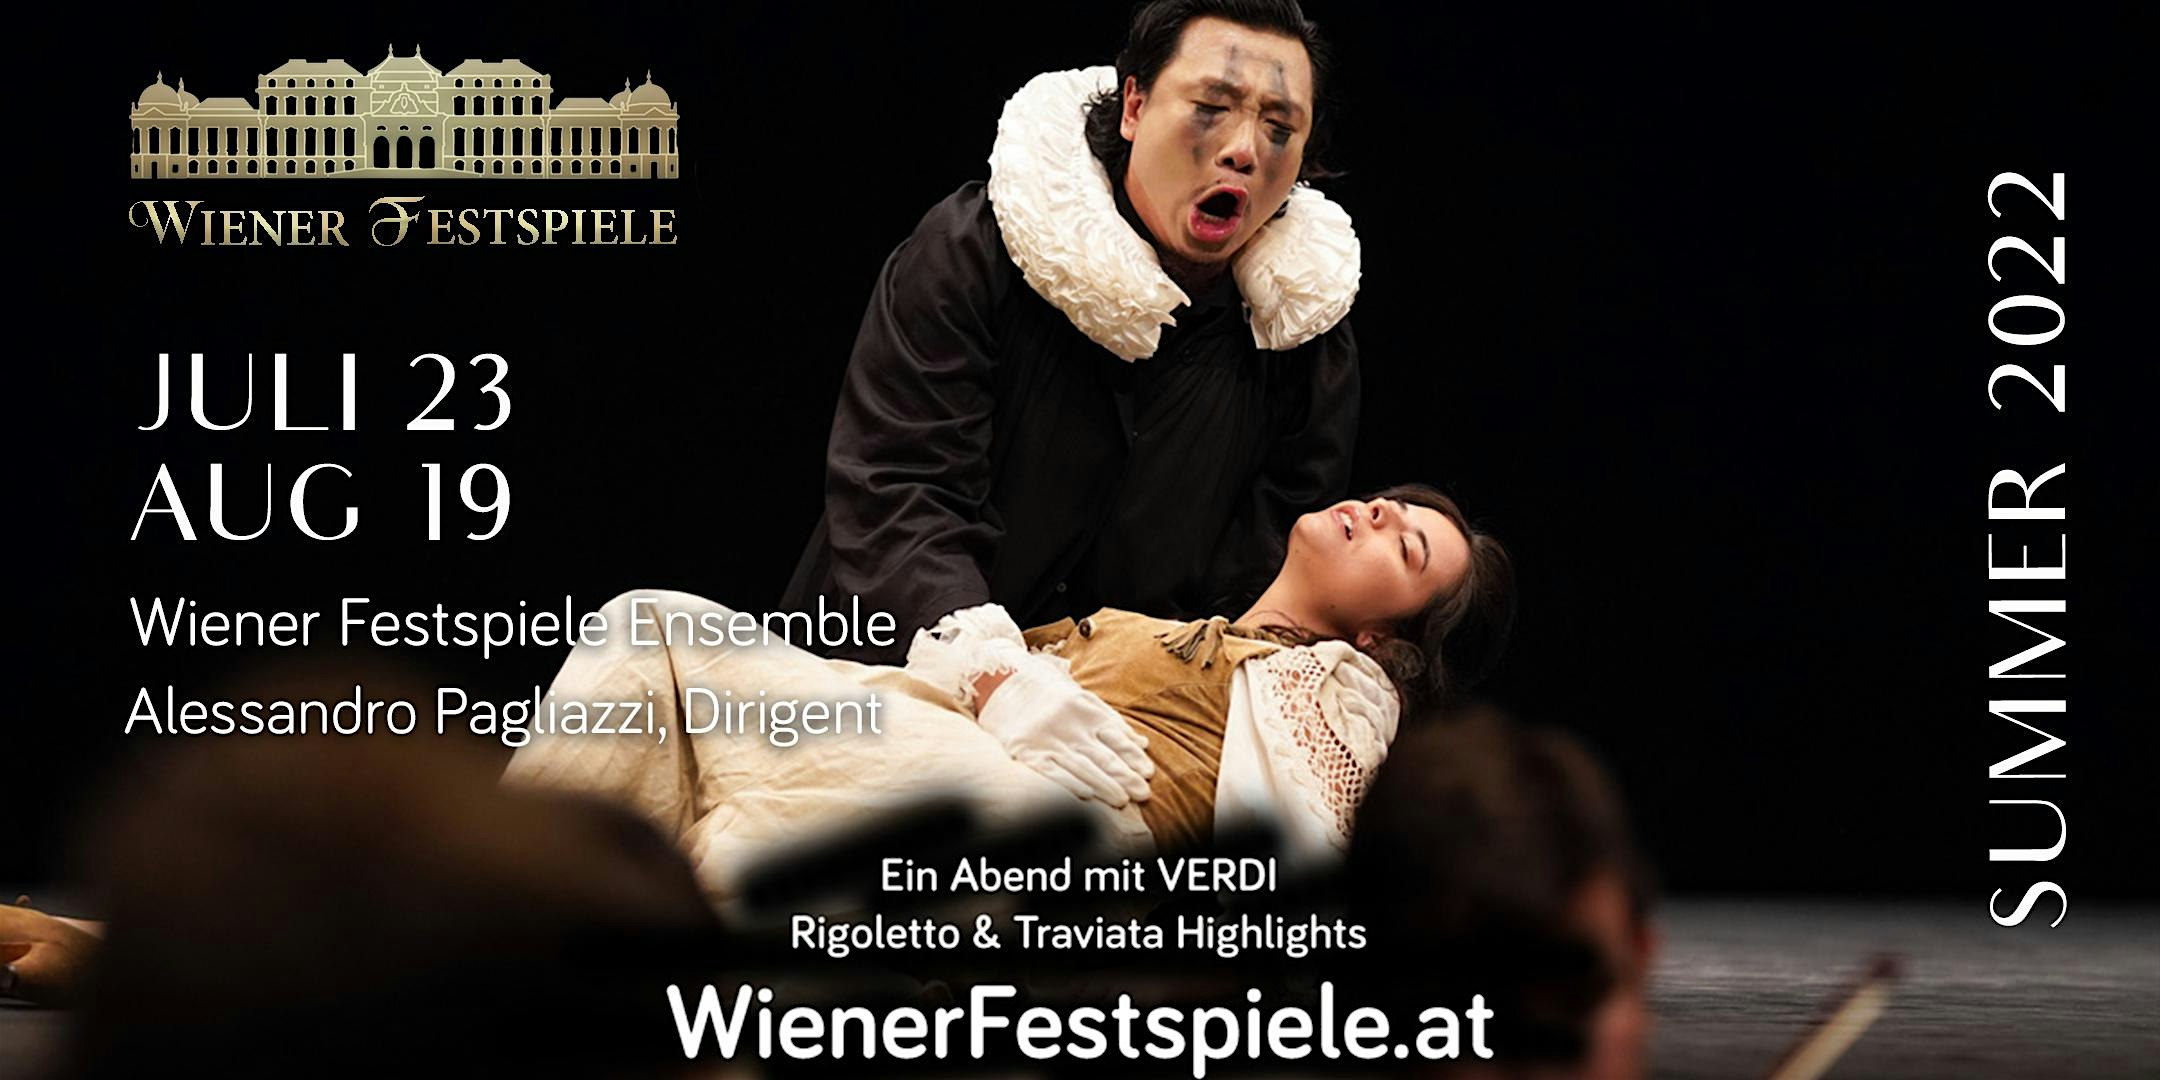 La Traviata & Rigoletto Highlights